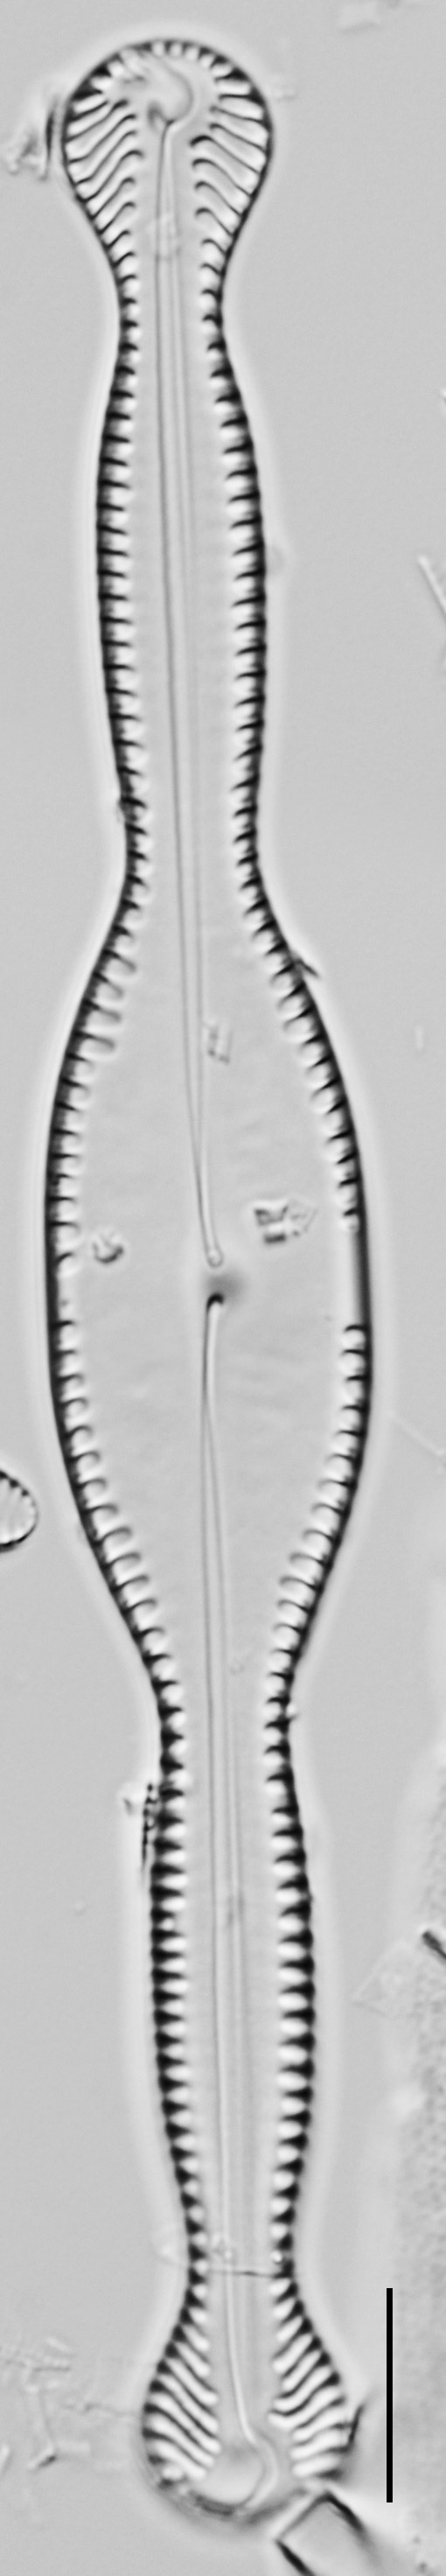 Pinnularia formica LM4